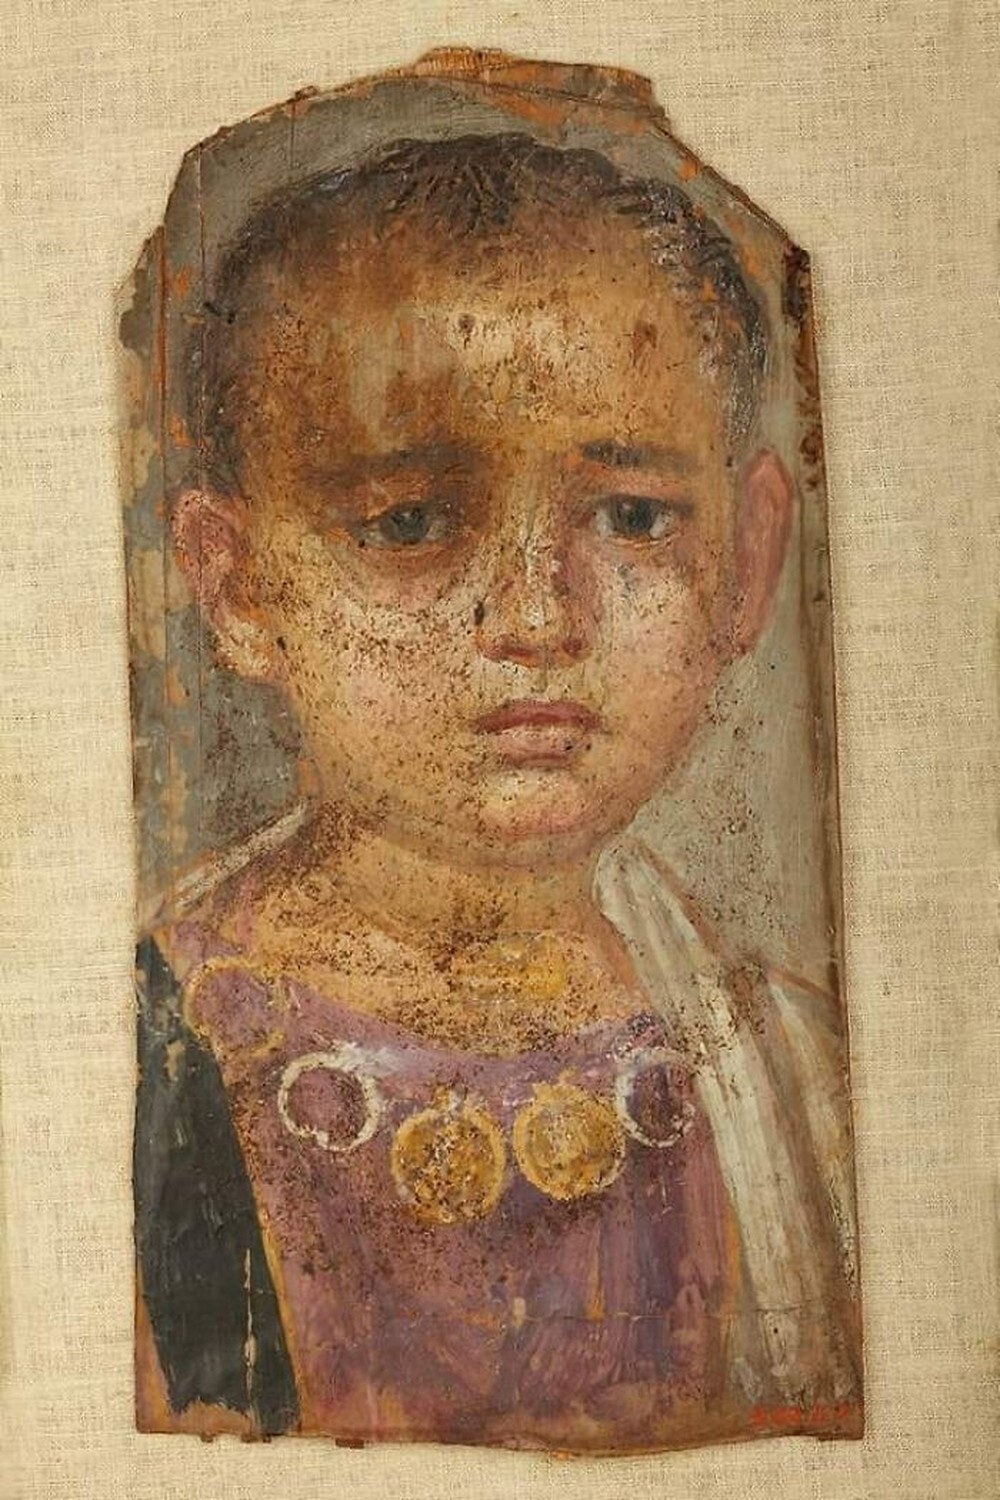 20. Фаюмский портрет маленькой девочки из Хавары, Египет, I век до н.э. Обнаружен вместе с мумией, которая могла быть матерью ребенка